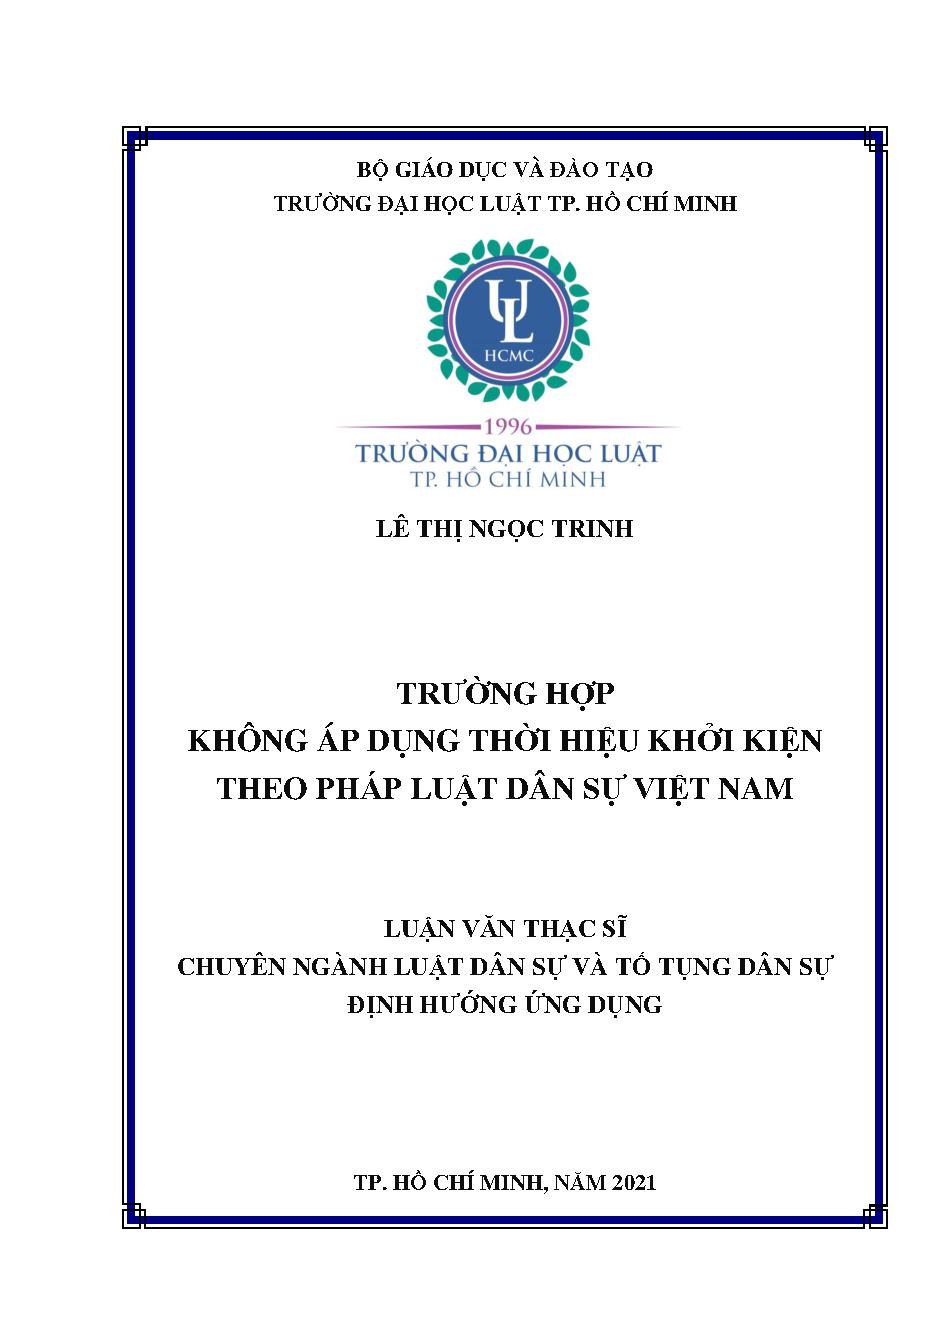 Trường hợp không áp dụng thời hiệu khởi kiện theo pháp luật dân sự Việt Nam